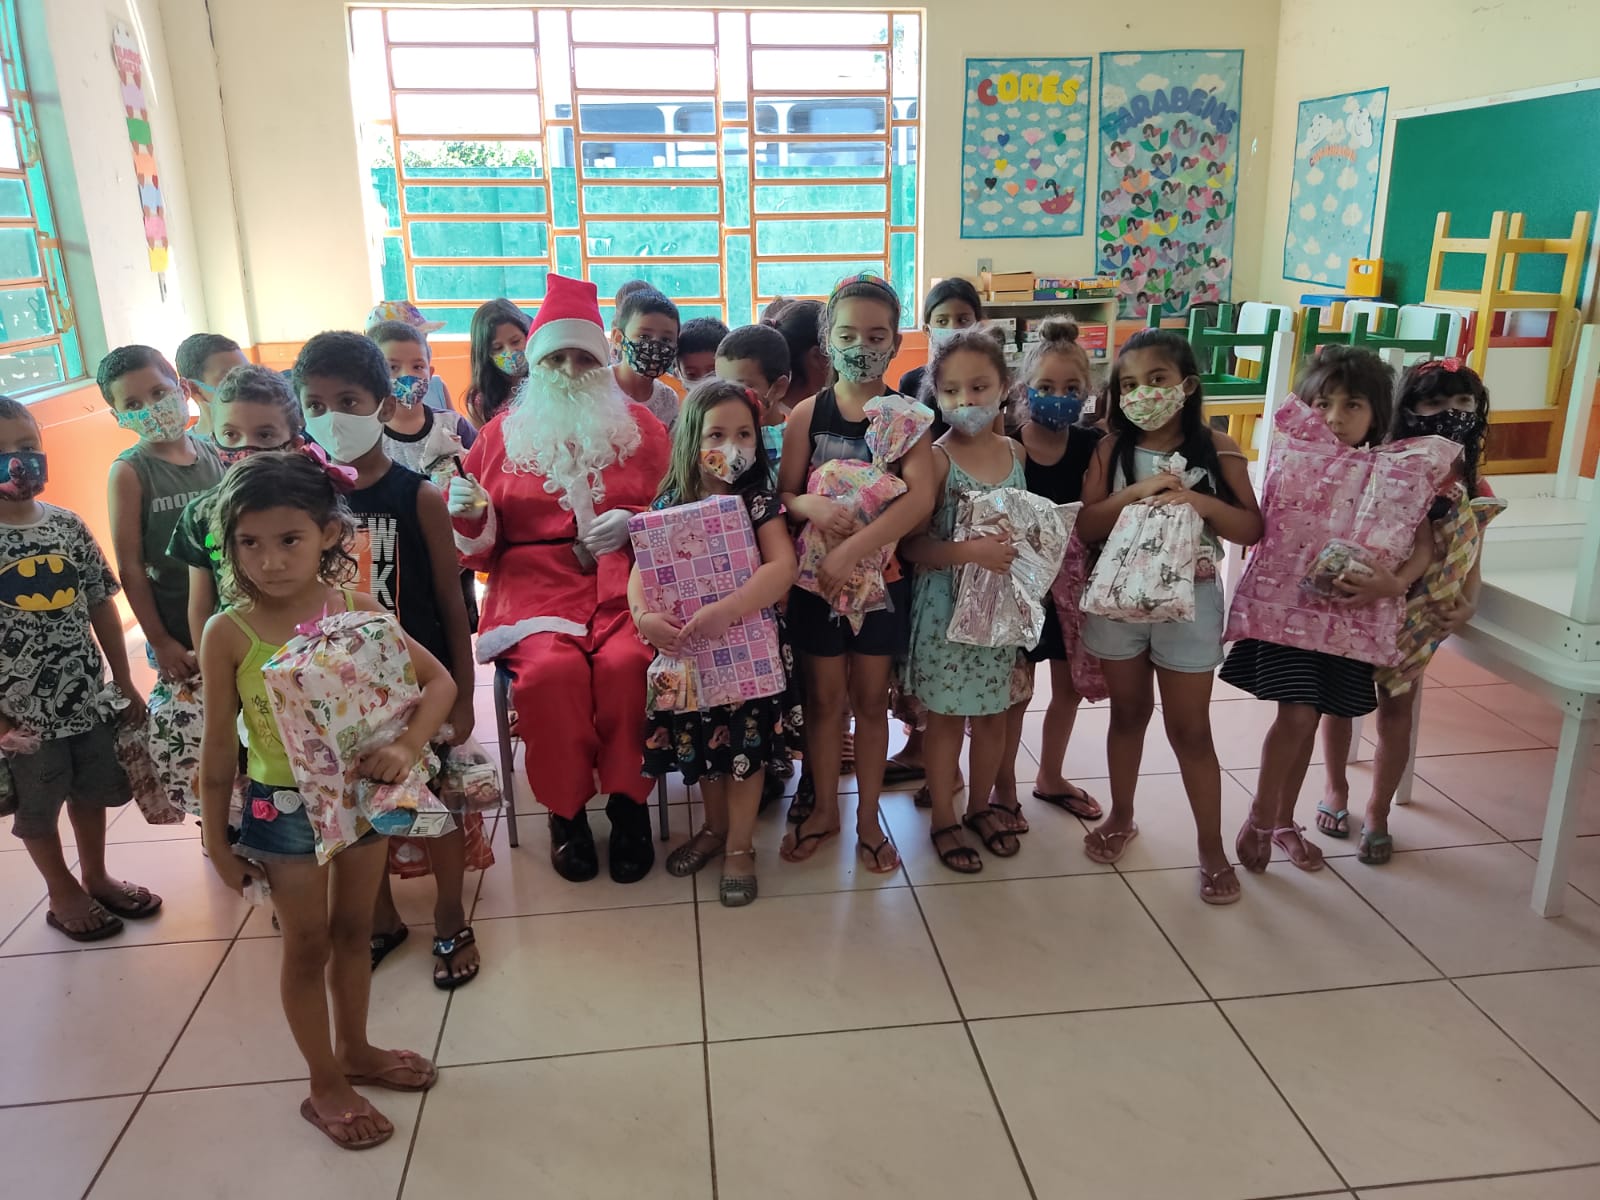 Cepal levou alegria e solidariedade às crianças